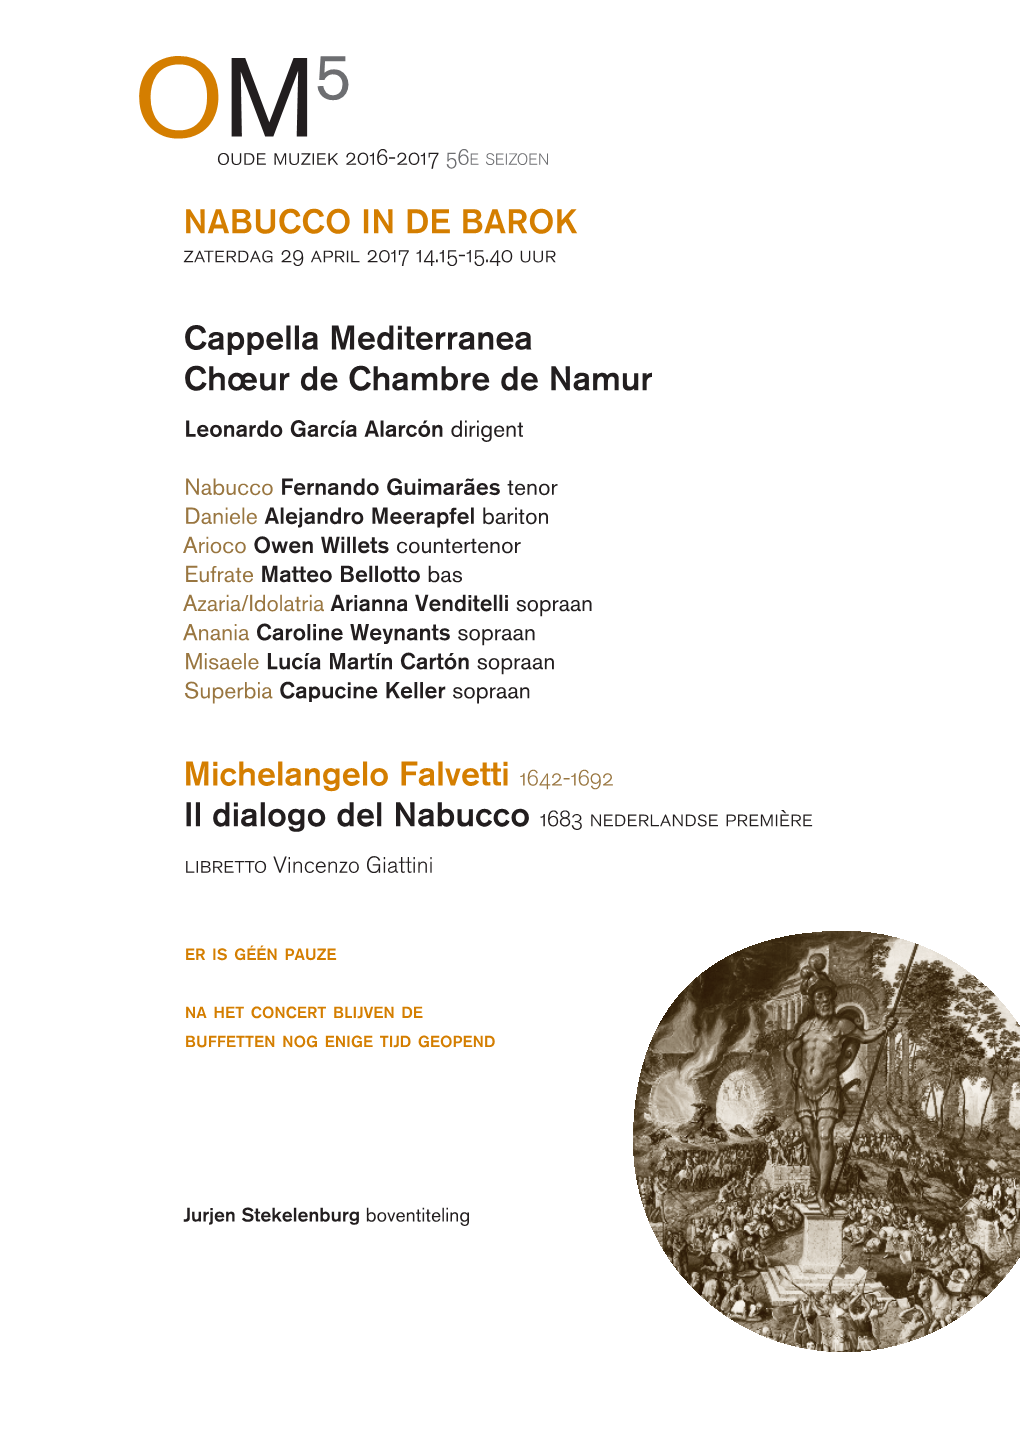 NABUCCO in DE BAROK Cappella Mediterranea Chœur De Chambre